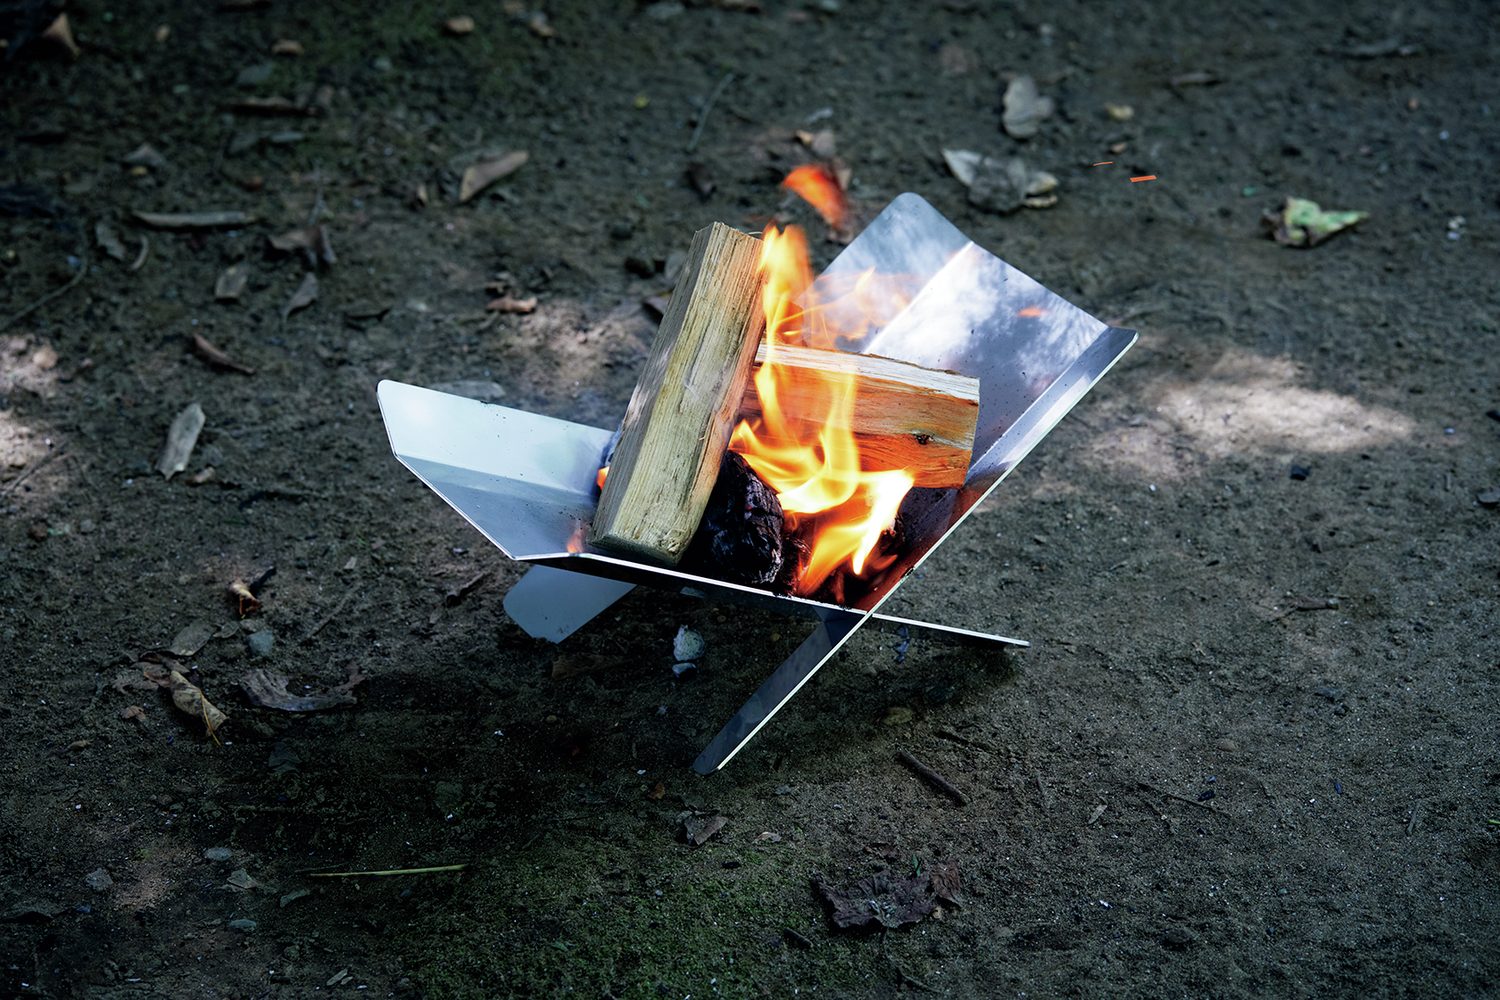 キャンプにおすすめの焚き火台８選。実際に火を着けて試してみました！【後編】 | 焚き火・火おこし道具 【BE-PAL】キャンプ 、アウトドア、自然派生活の情報源ビーパル